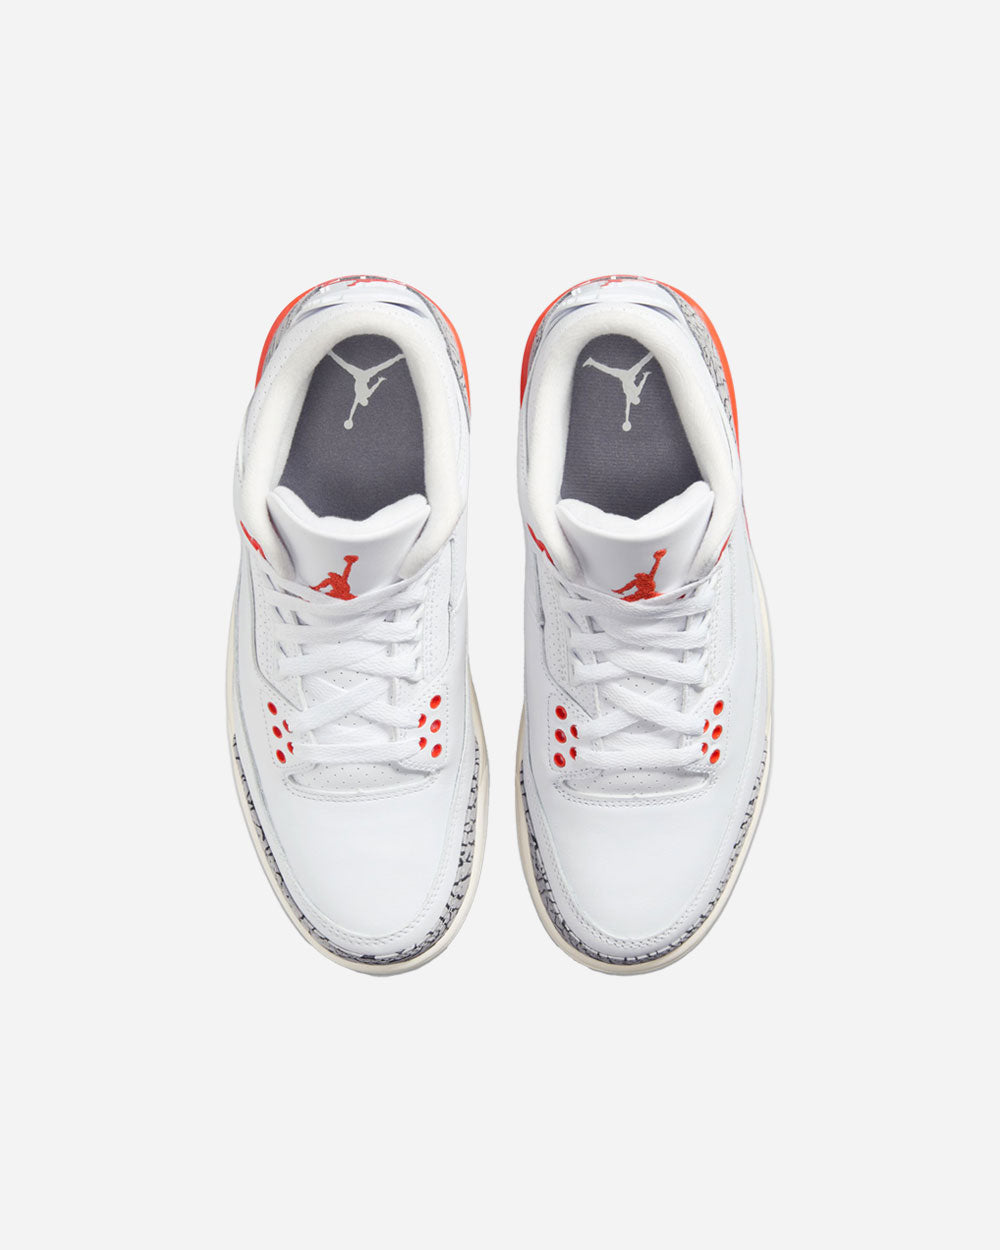 Air Jordan 3 Retro "Georgia Peach" White/Cosmic Clay CK9246-121